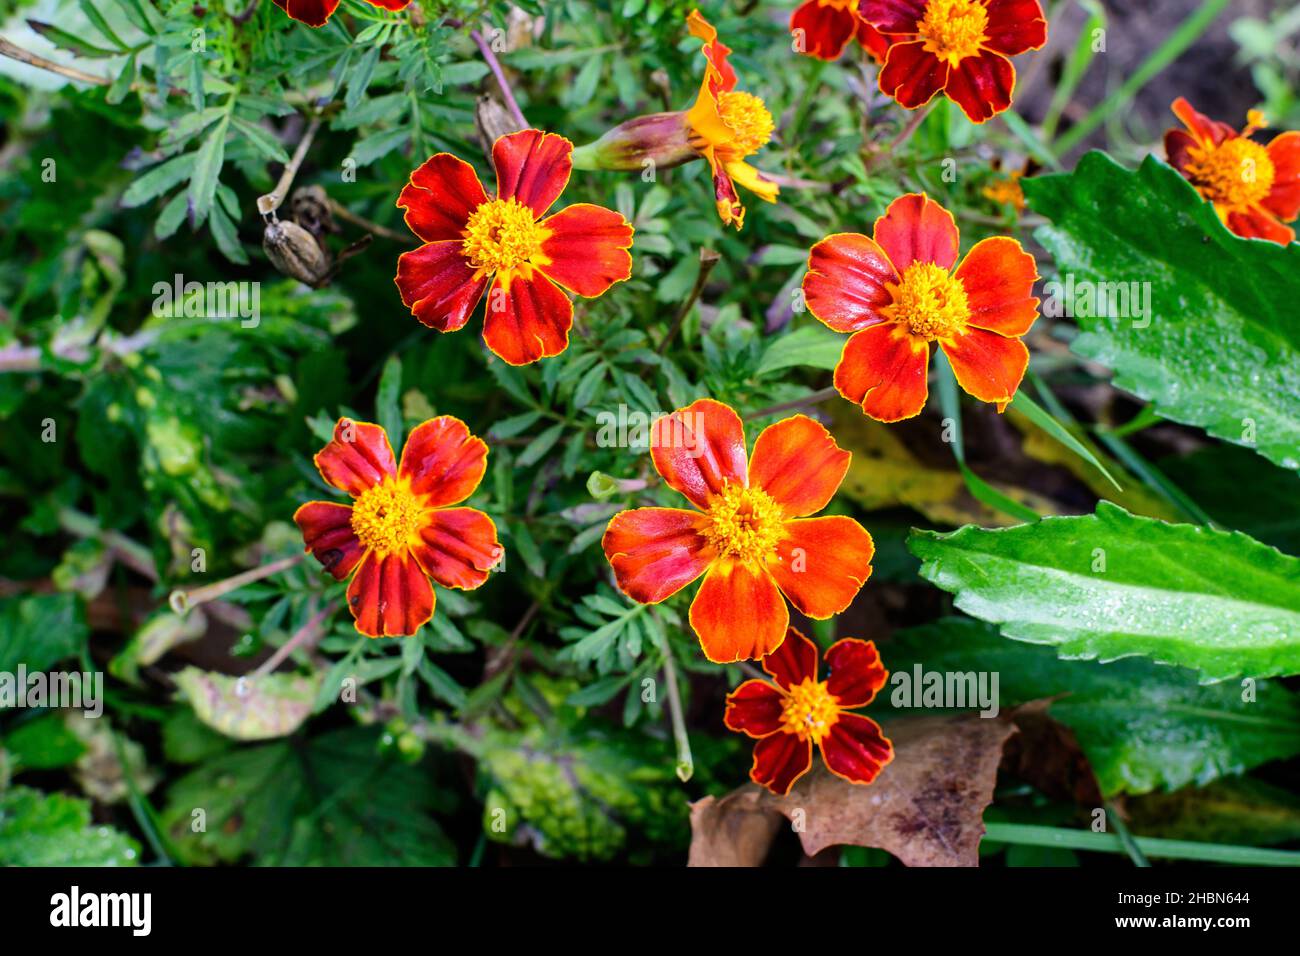 Grand groupe de tagetes orange ou de fleurs marigolées africaines dans un jardin dans un jardin ensoleillé d'été, fond floral texturé photographié avec du fo doux Banque D'Images